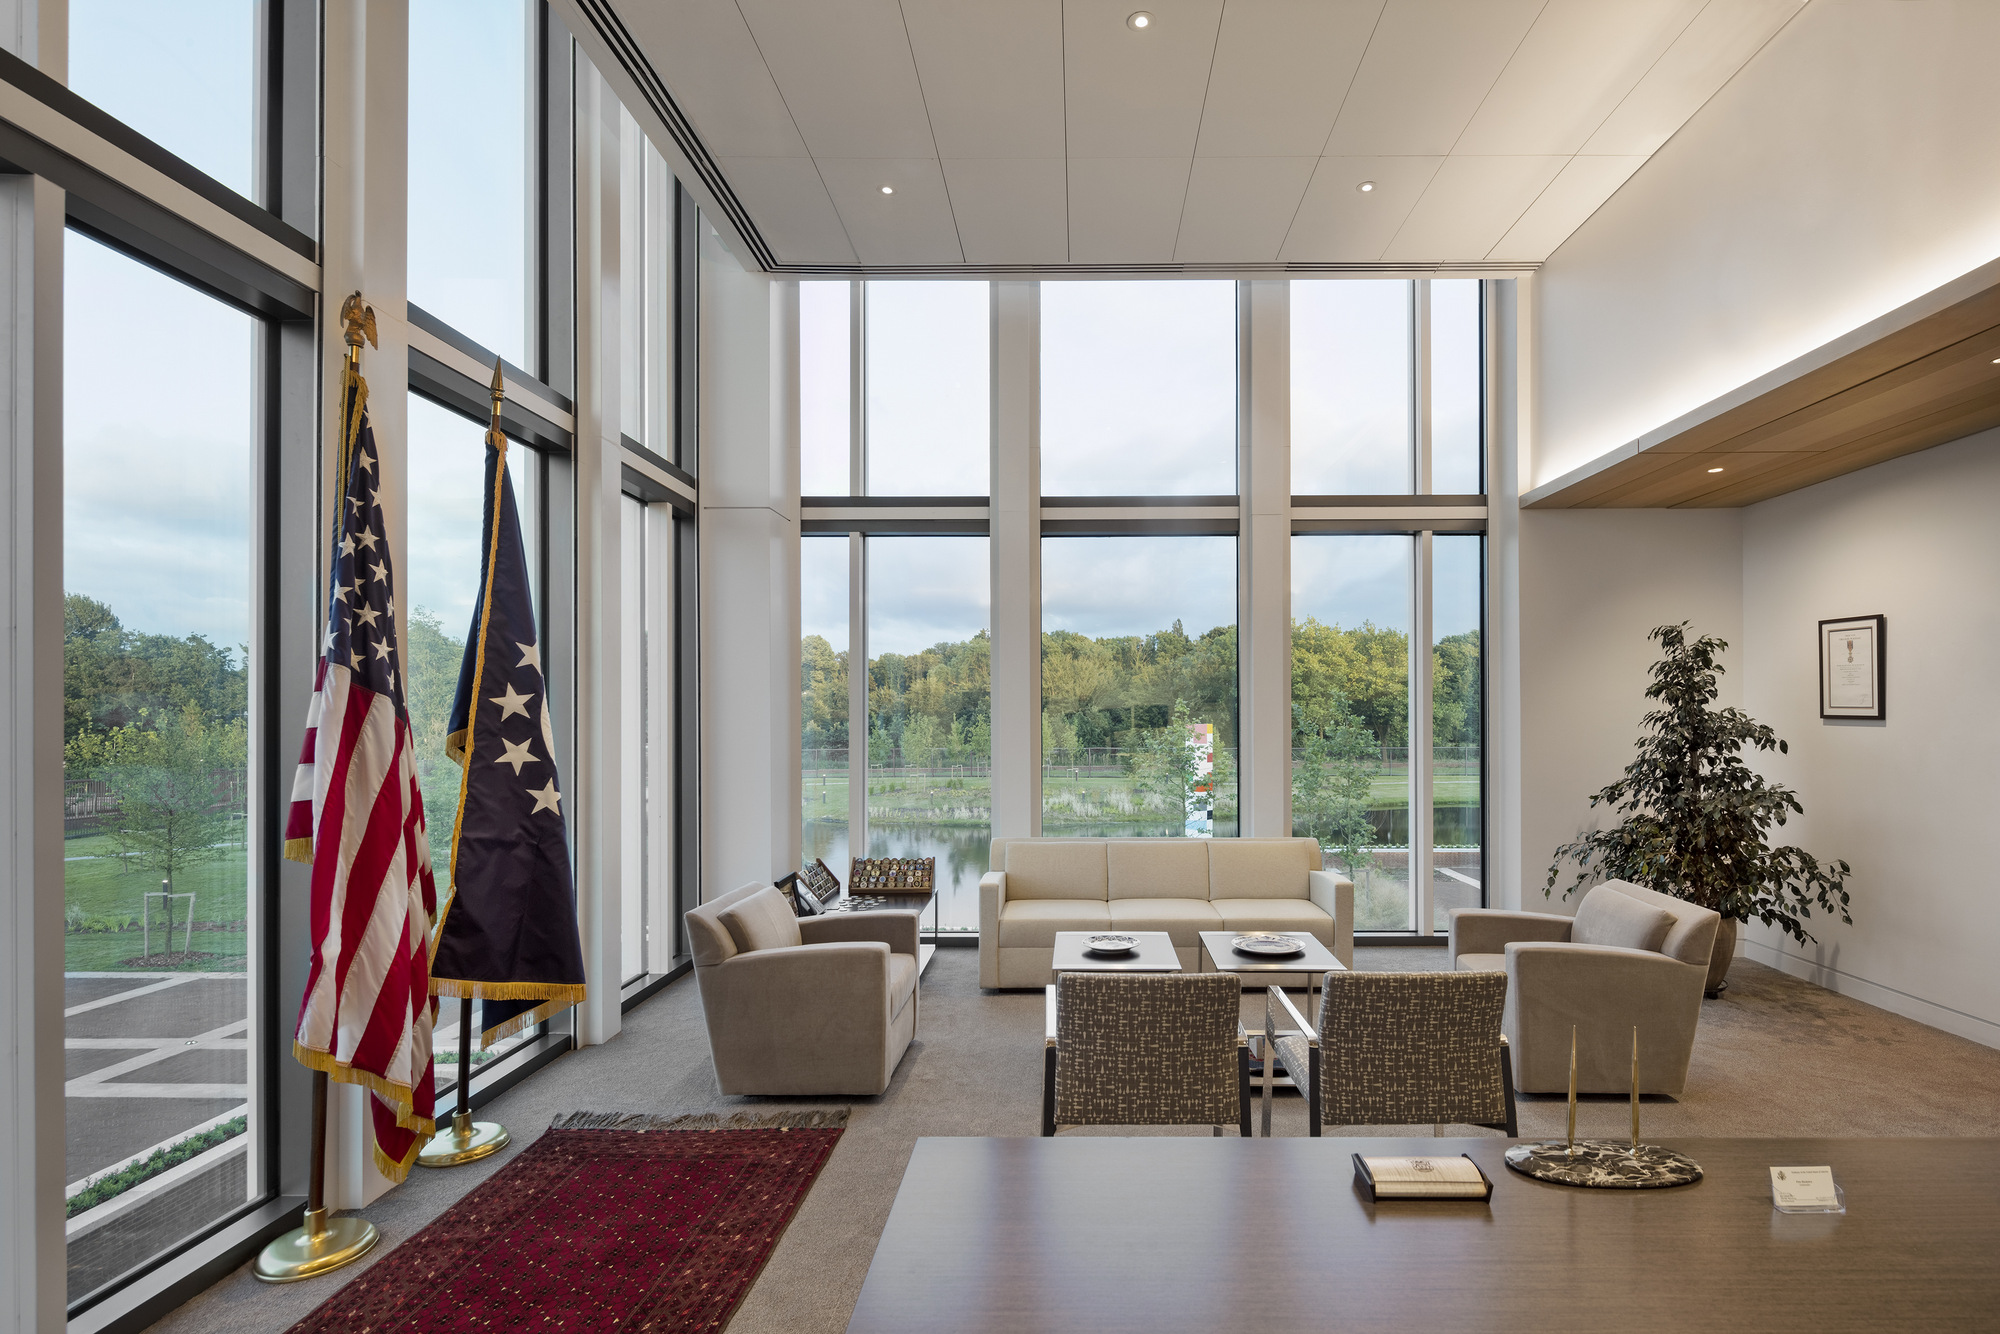 图片[6]|美国驻海牙大使馆办公室|ART-Arrakis | 建筑室内设计的创新与灵感